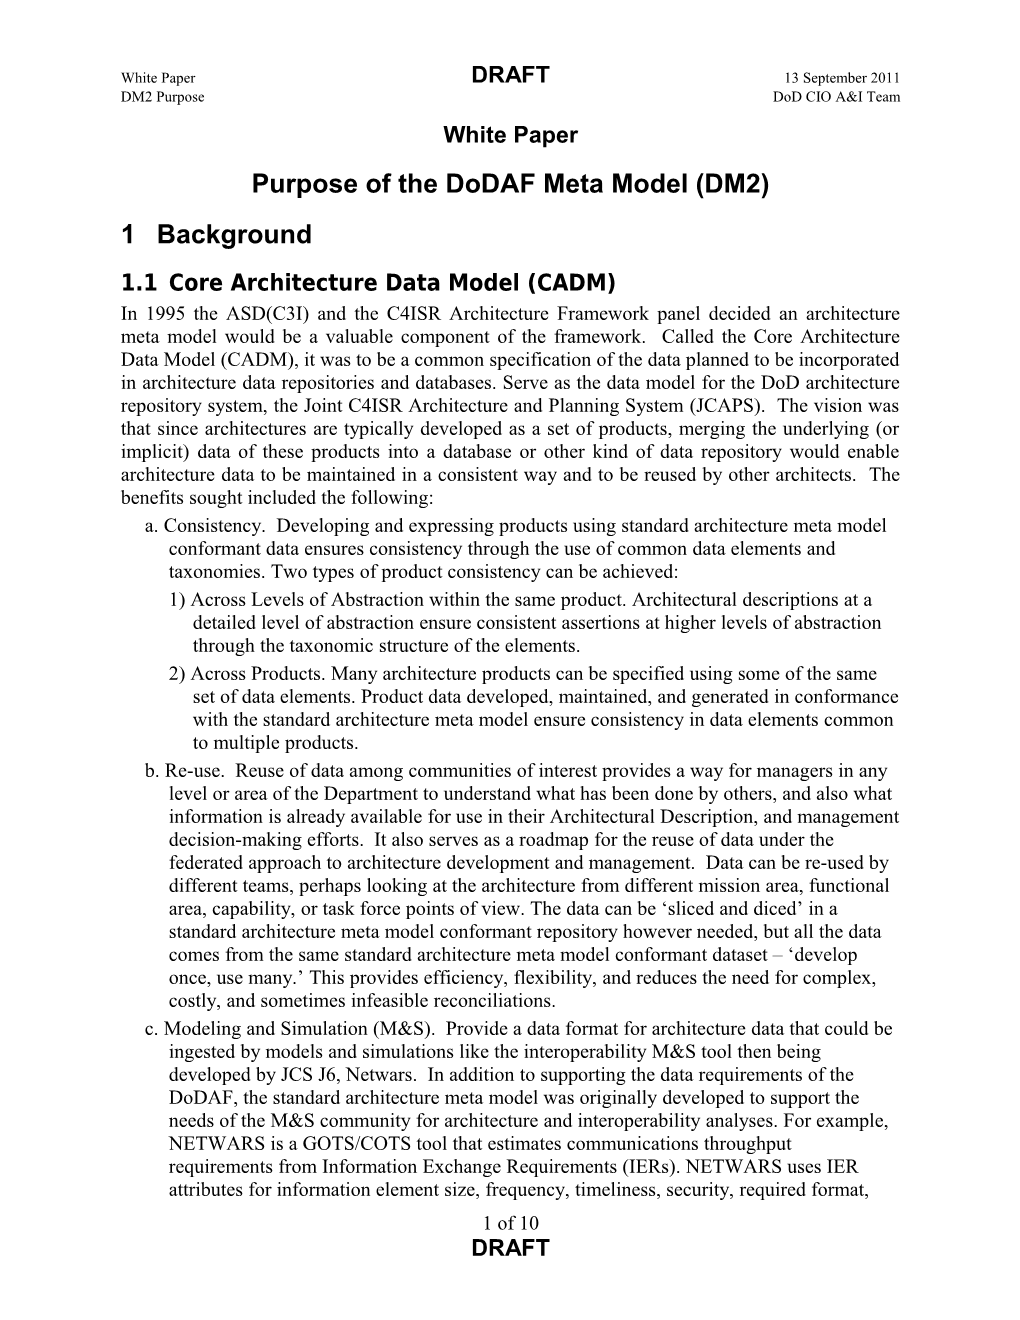 Purpose of the Dodaf Meta Model (DM2)